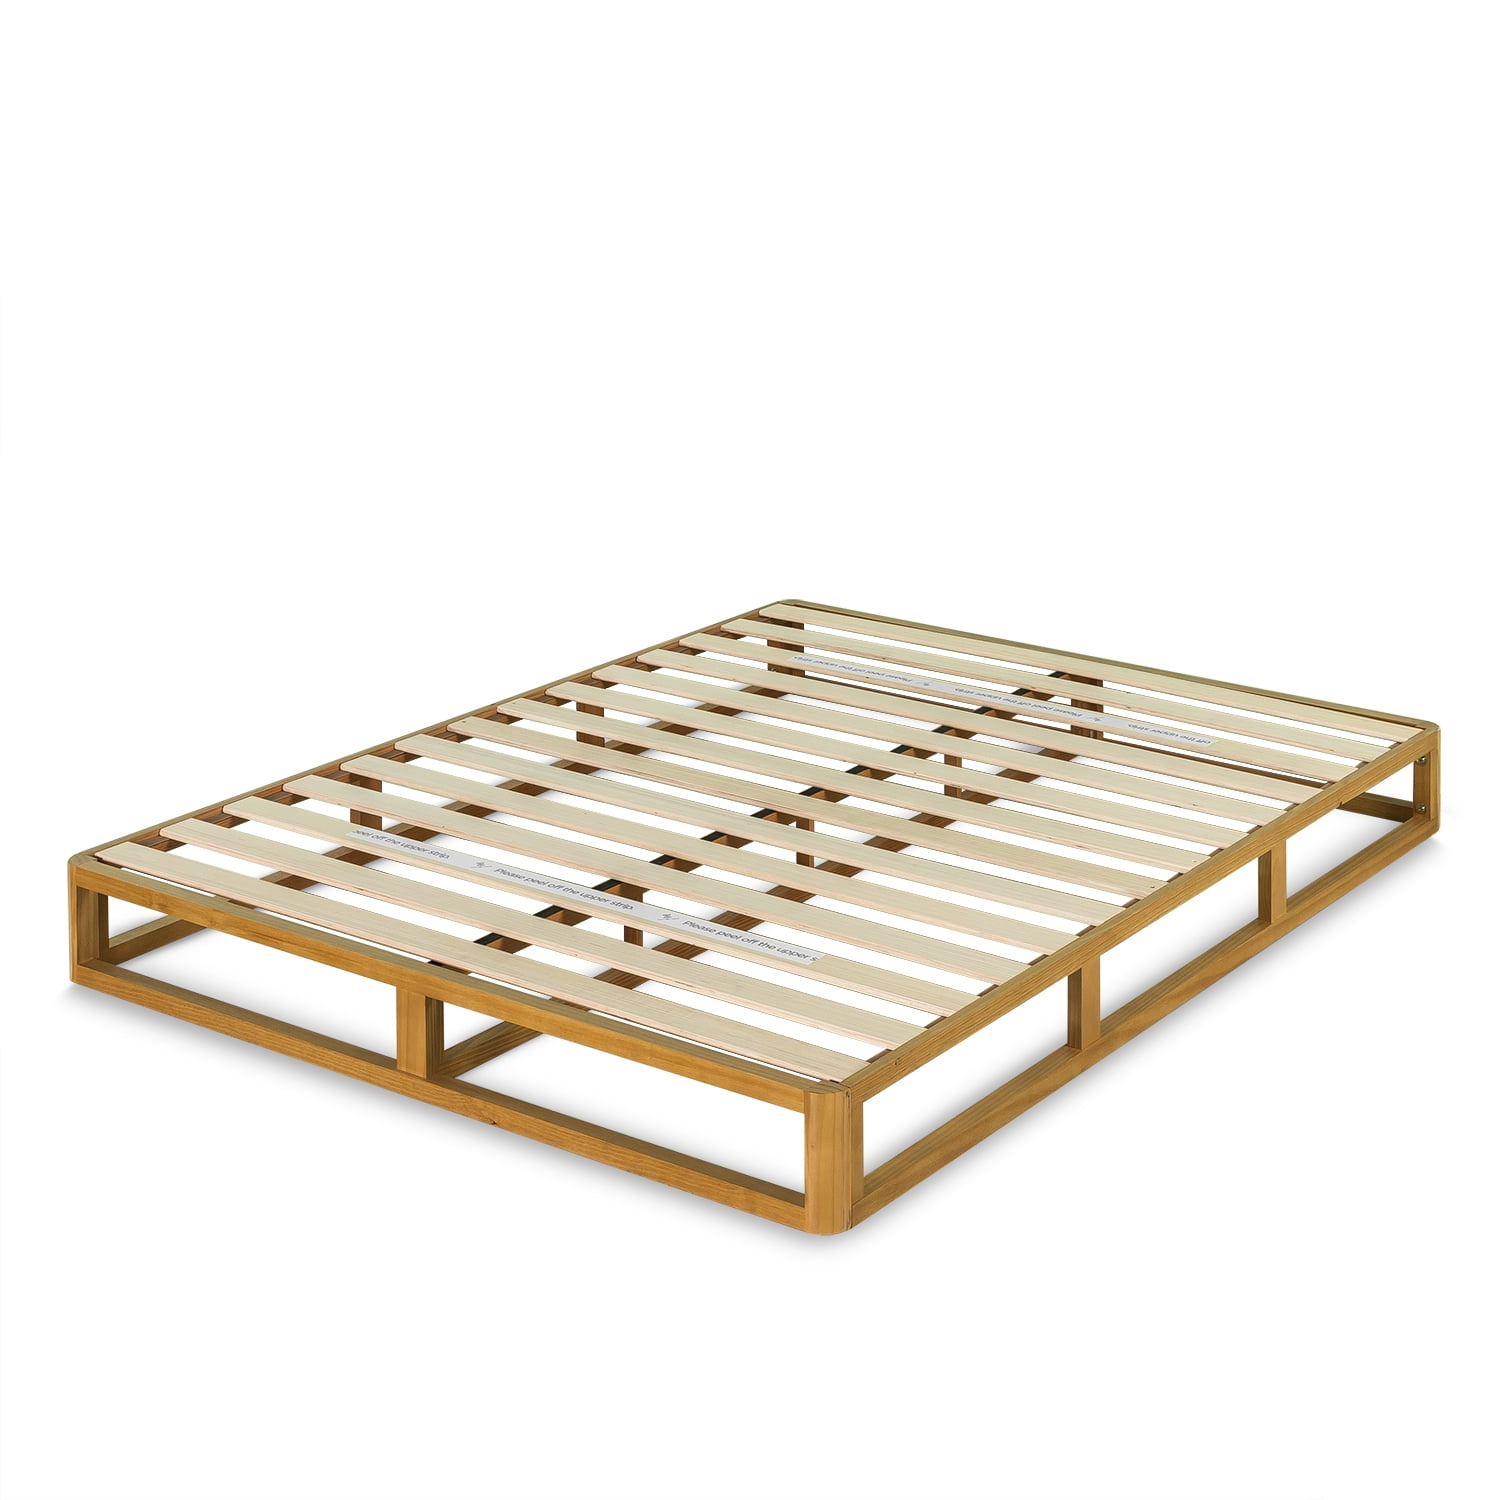 Zinus Platform 8 Wood Bed Frame, Low Profile Wooden Bed Frame